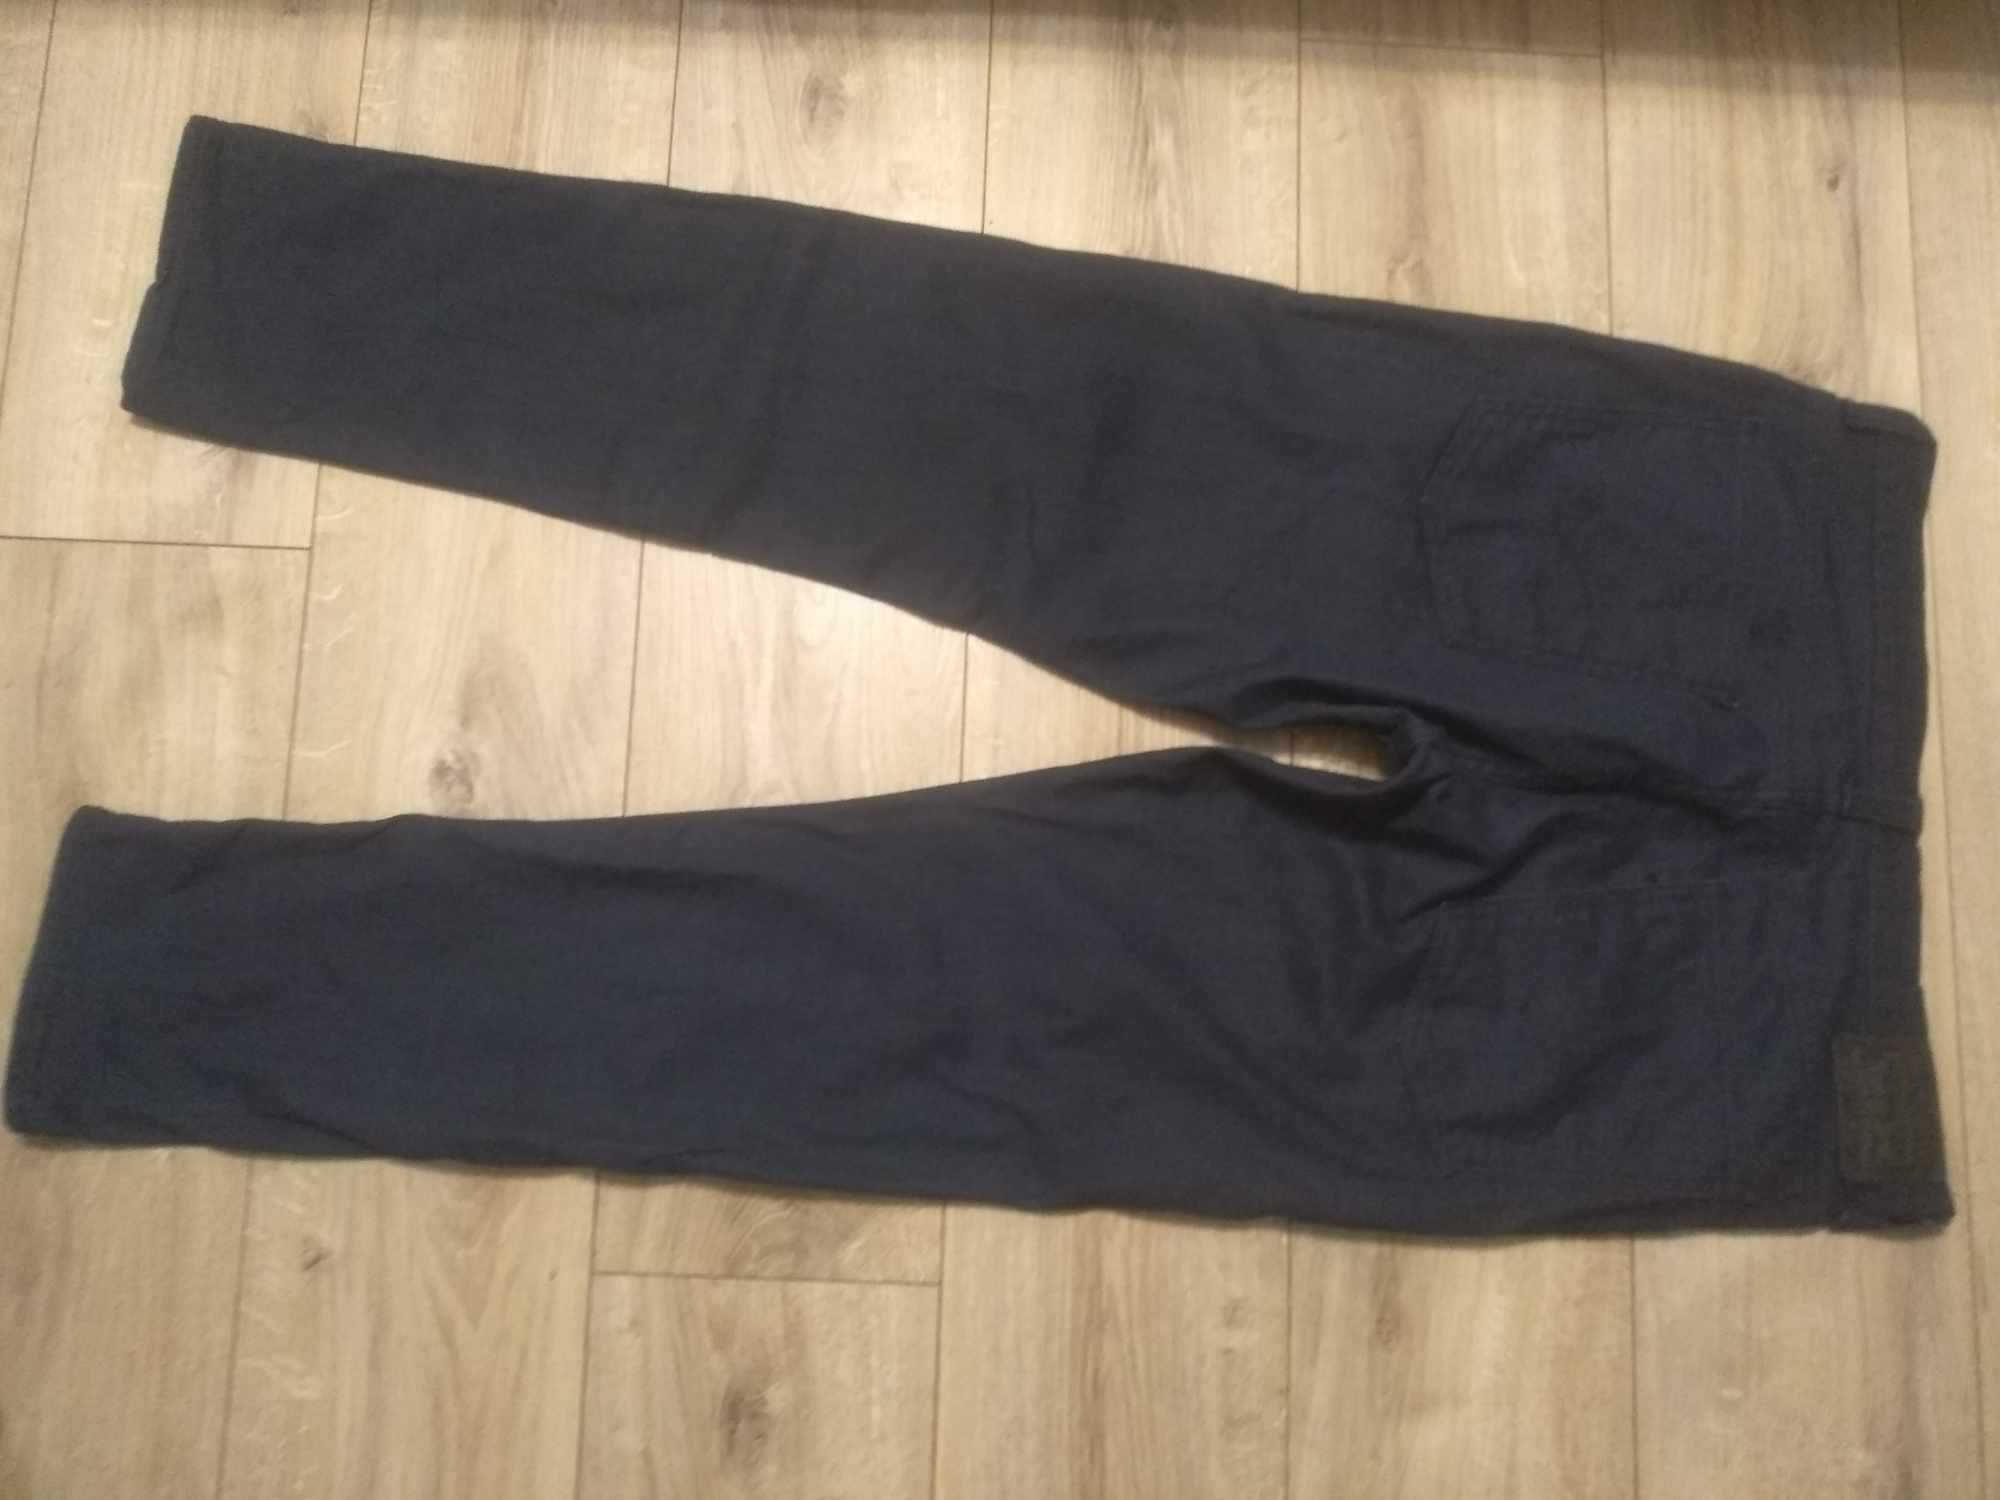 Levis 508 W36L32 spodnie jeansowe granatowe super stan rurki